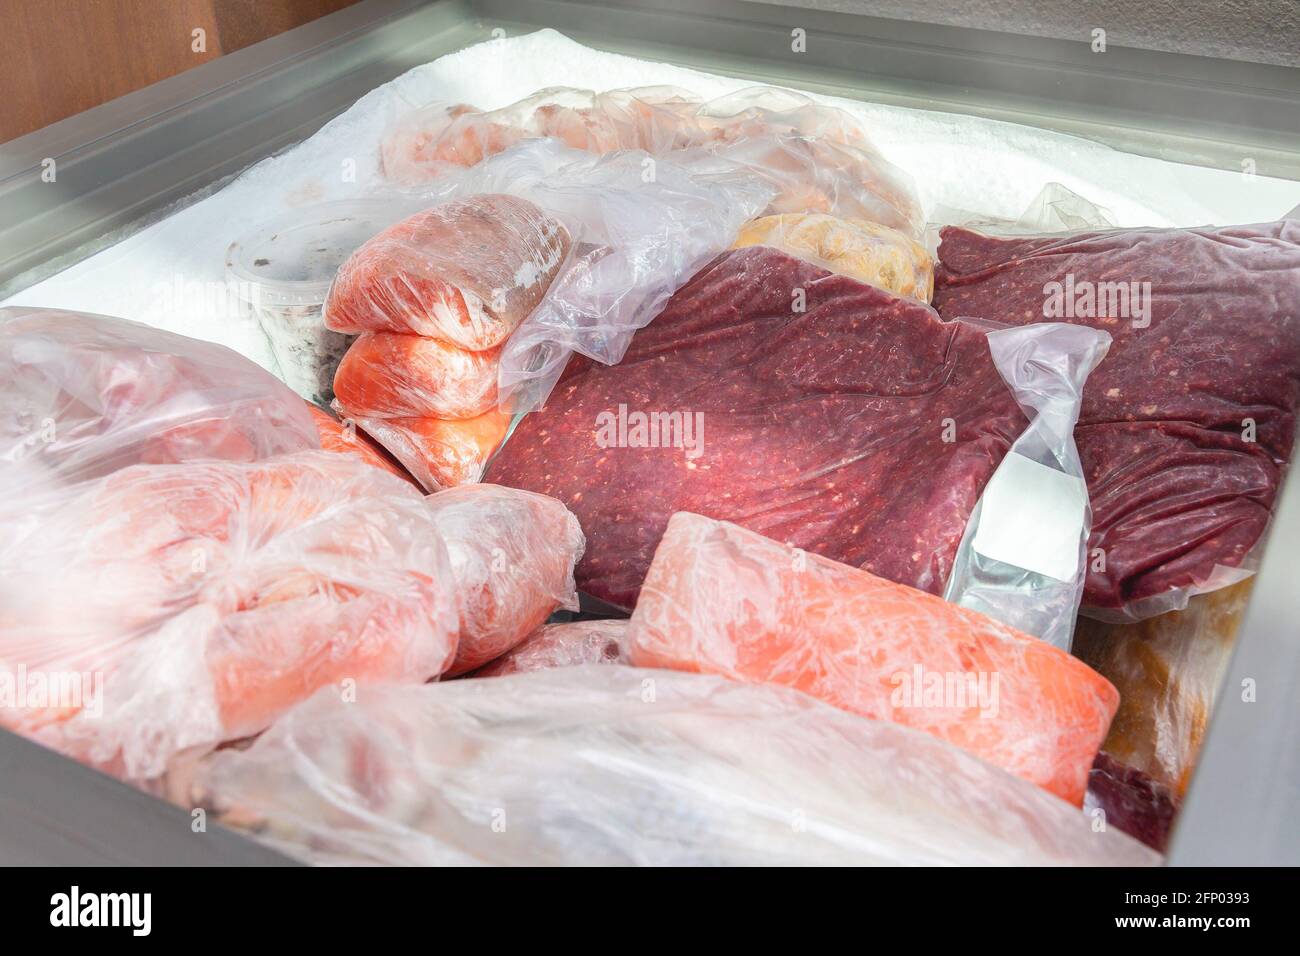 Tiefkühlkost im Gefrierschrank. Tiefgekühltes Fleisch und andere Lebensmittel in einem horizontalen Gefrierschrank verpackt. Lebensmittelkonservierung bei niedrigen Temperaturen. Stockfoto